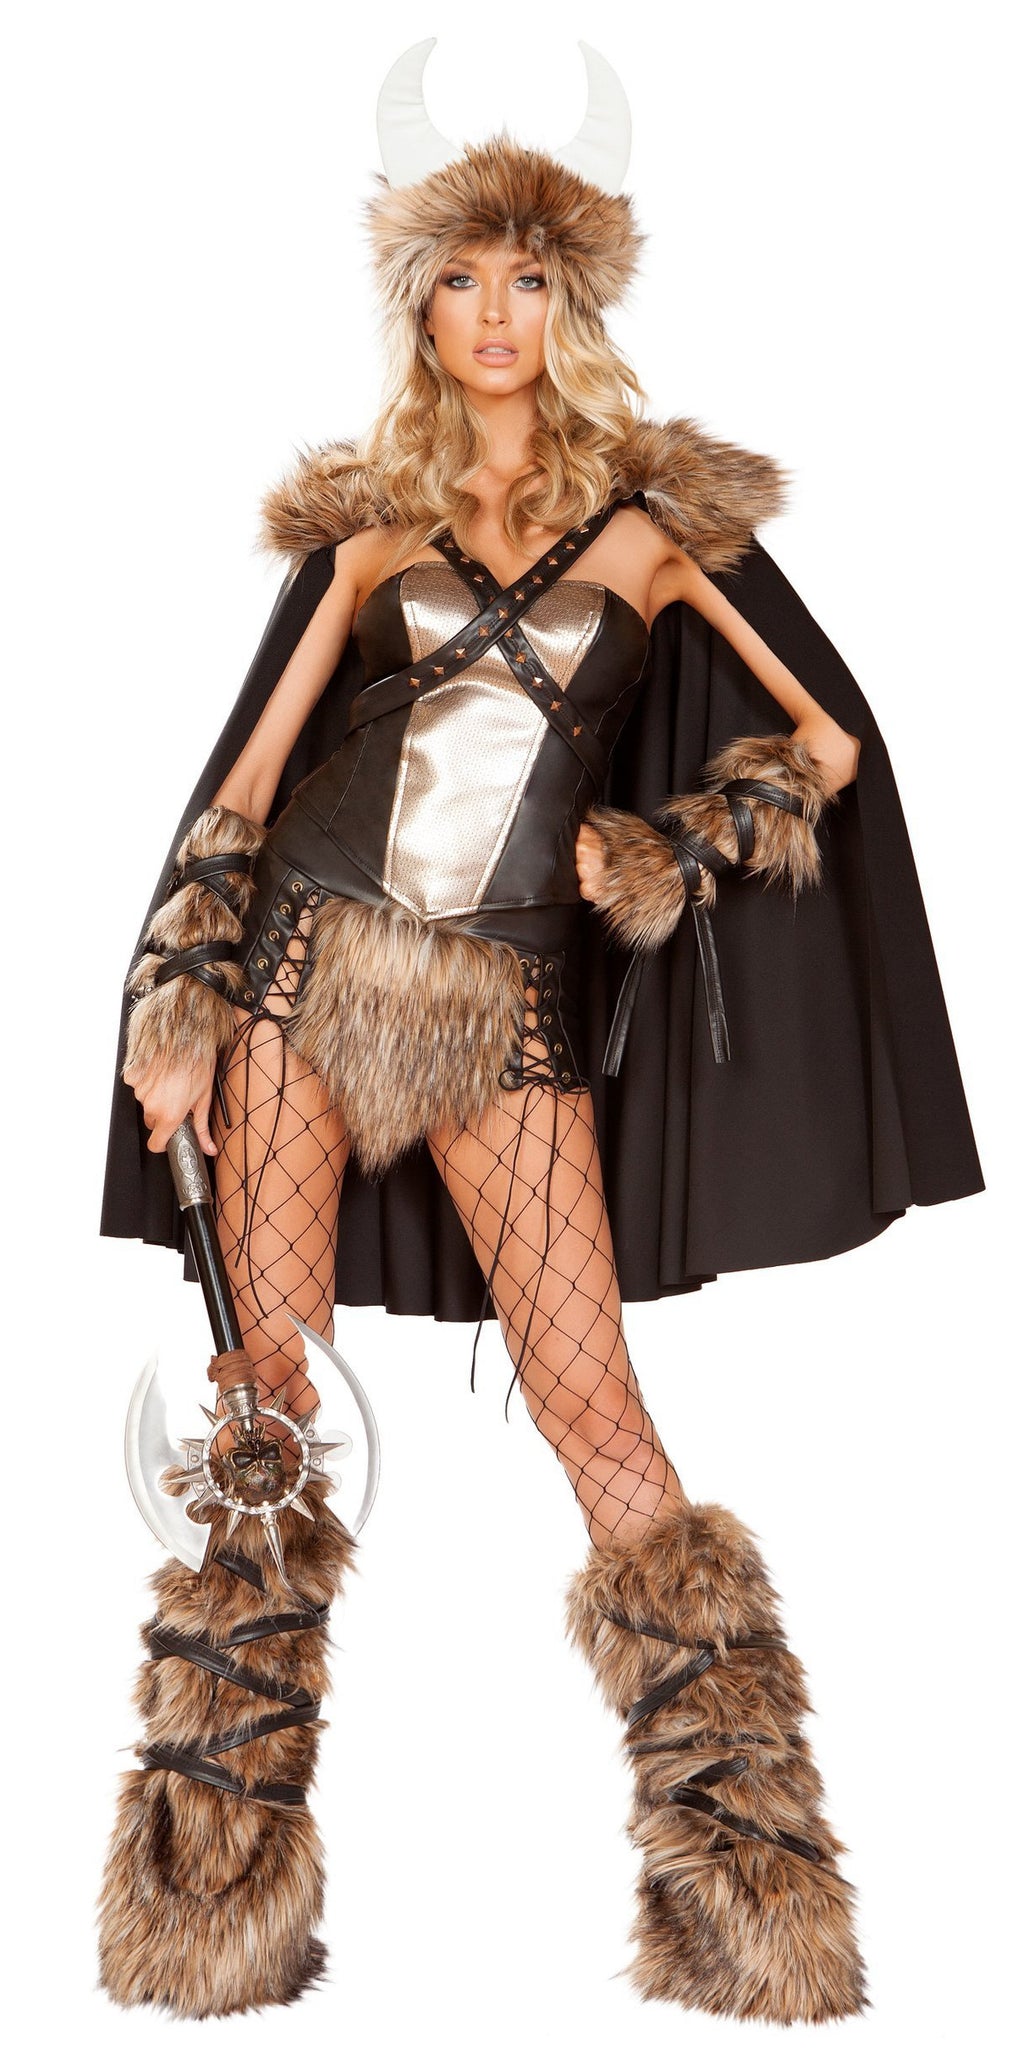 Viking Warrior Costume